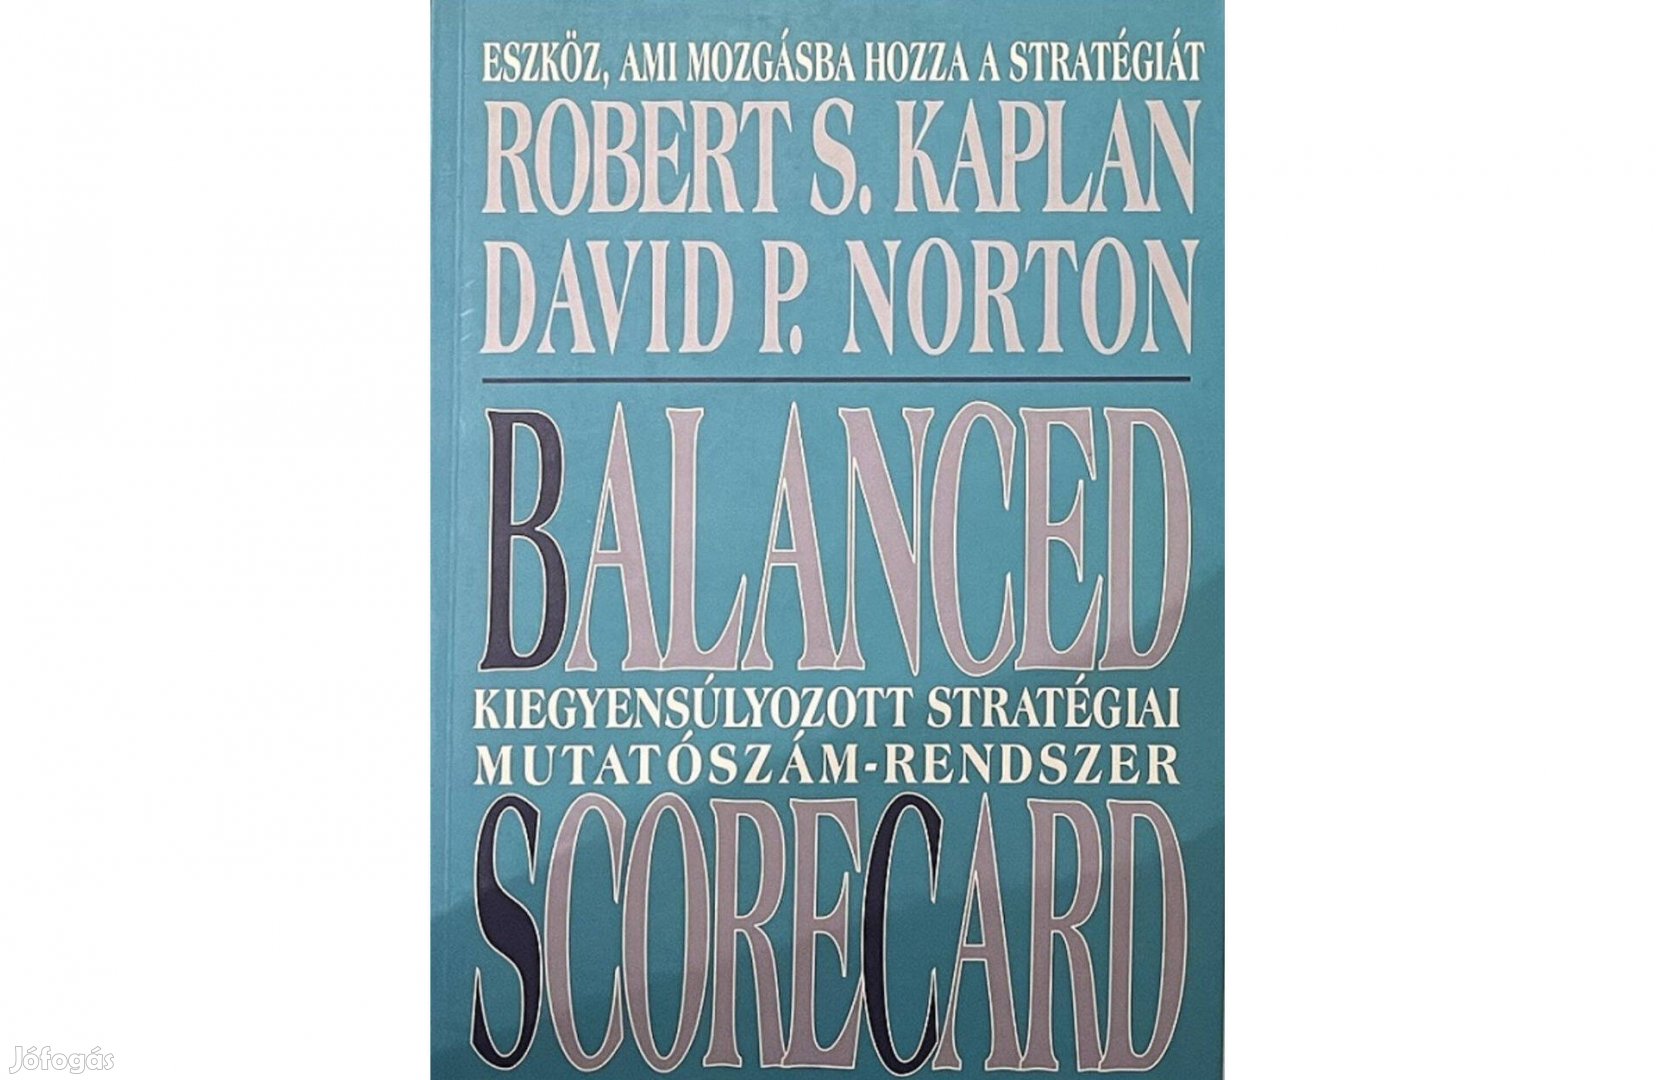 Kaplan-Norton: Balanced Scorecard - Kiegyensúlyozott stratégiai mutató